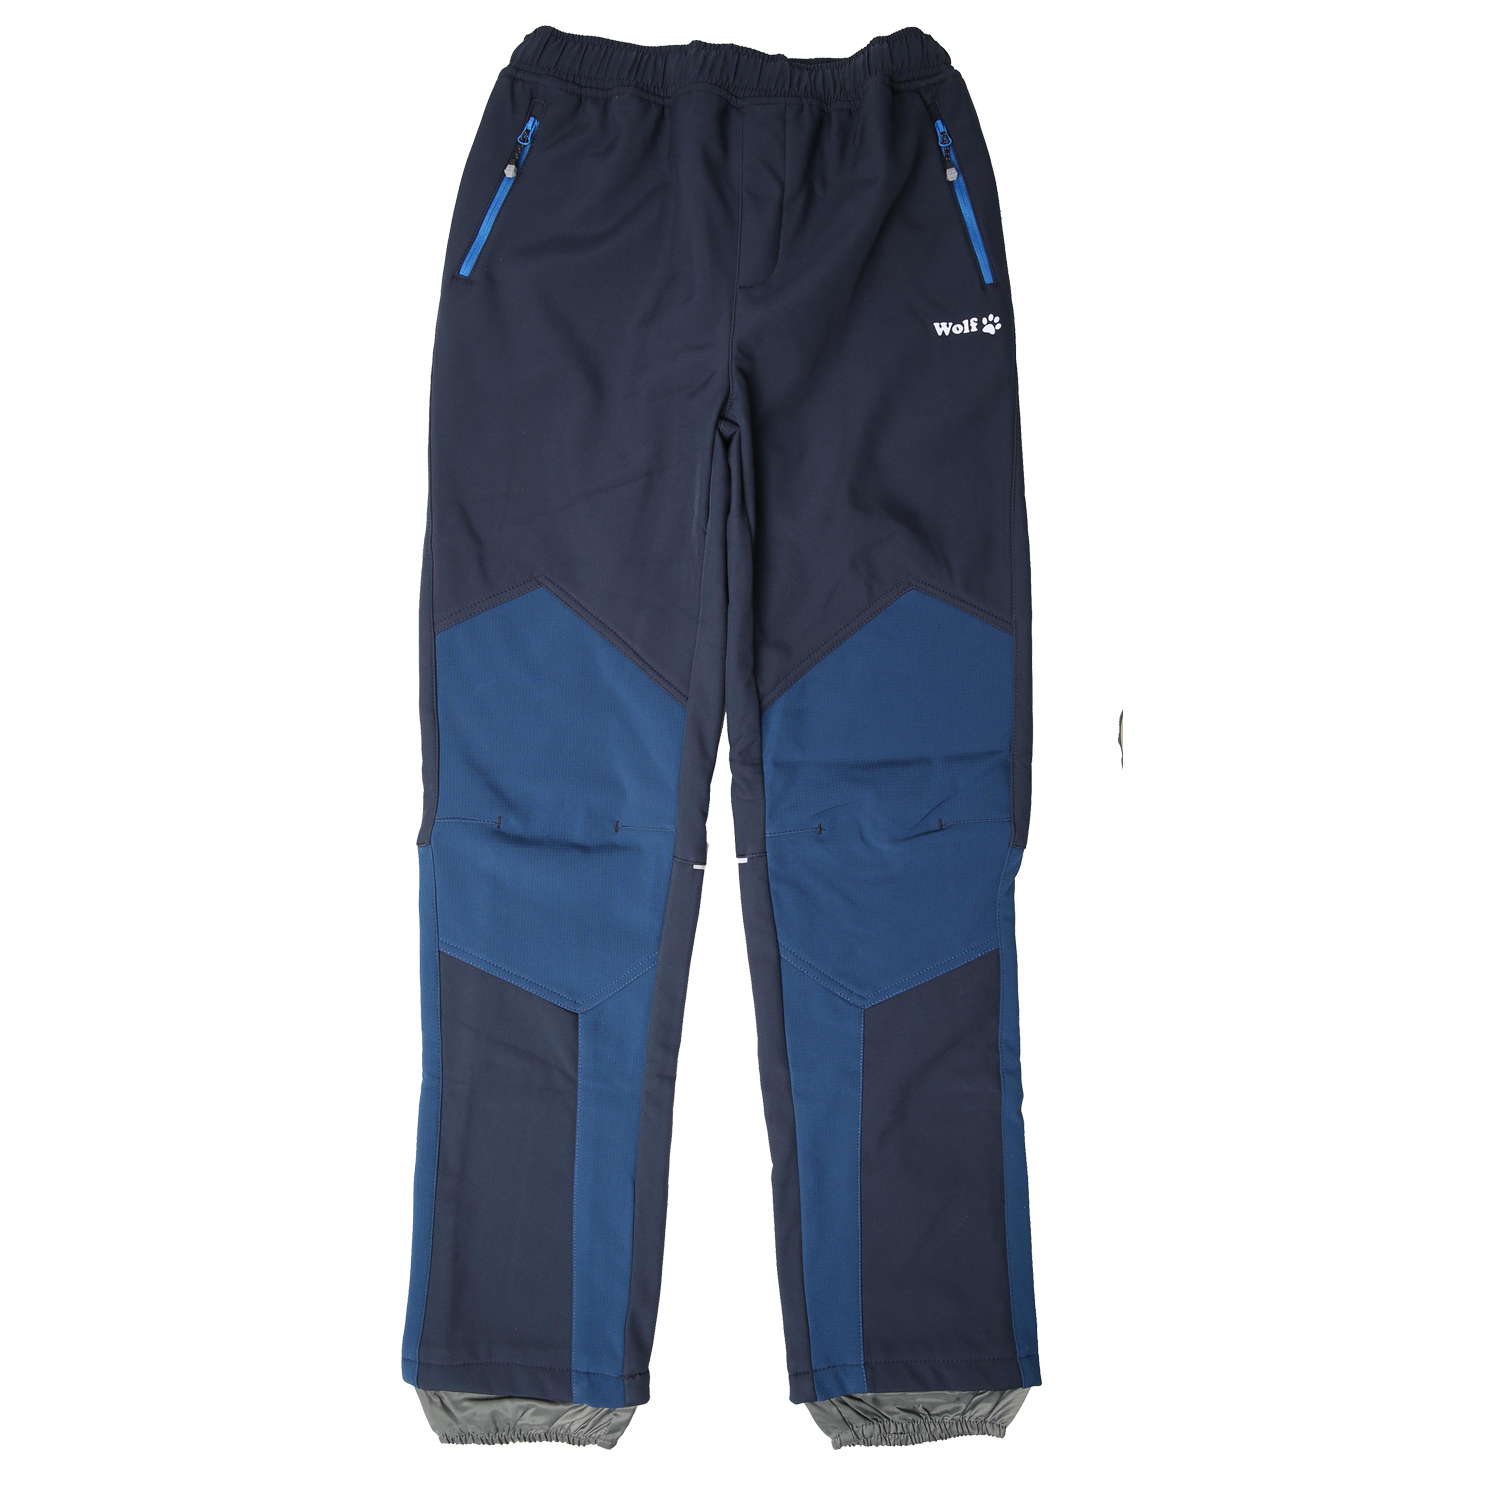 Chlapecké softshellové kalhoty, zateplené - Wolf B2297, tmavě modrá/petrol Barva: Modrá, Velikost: 146